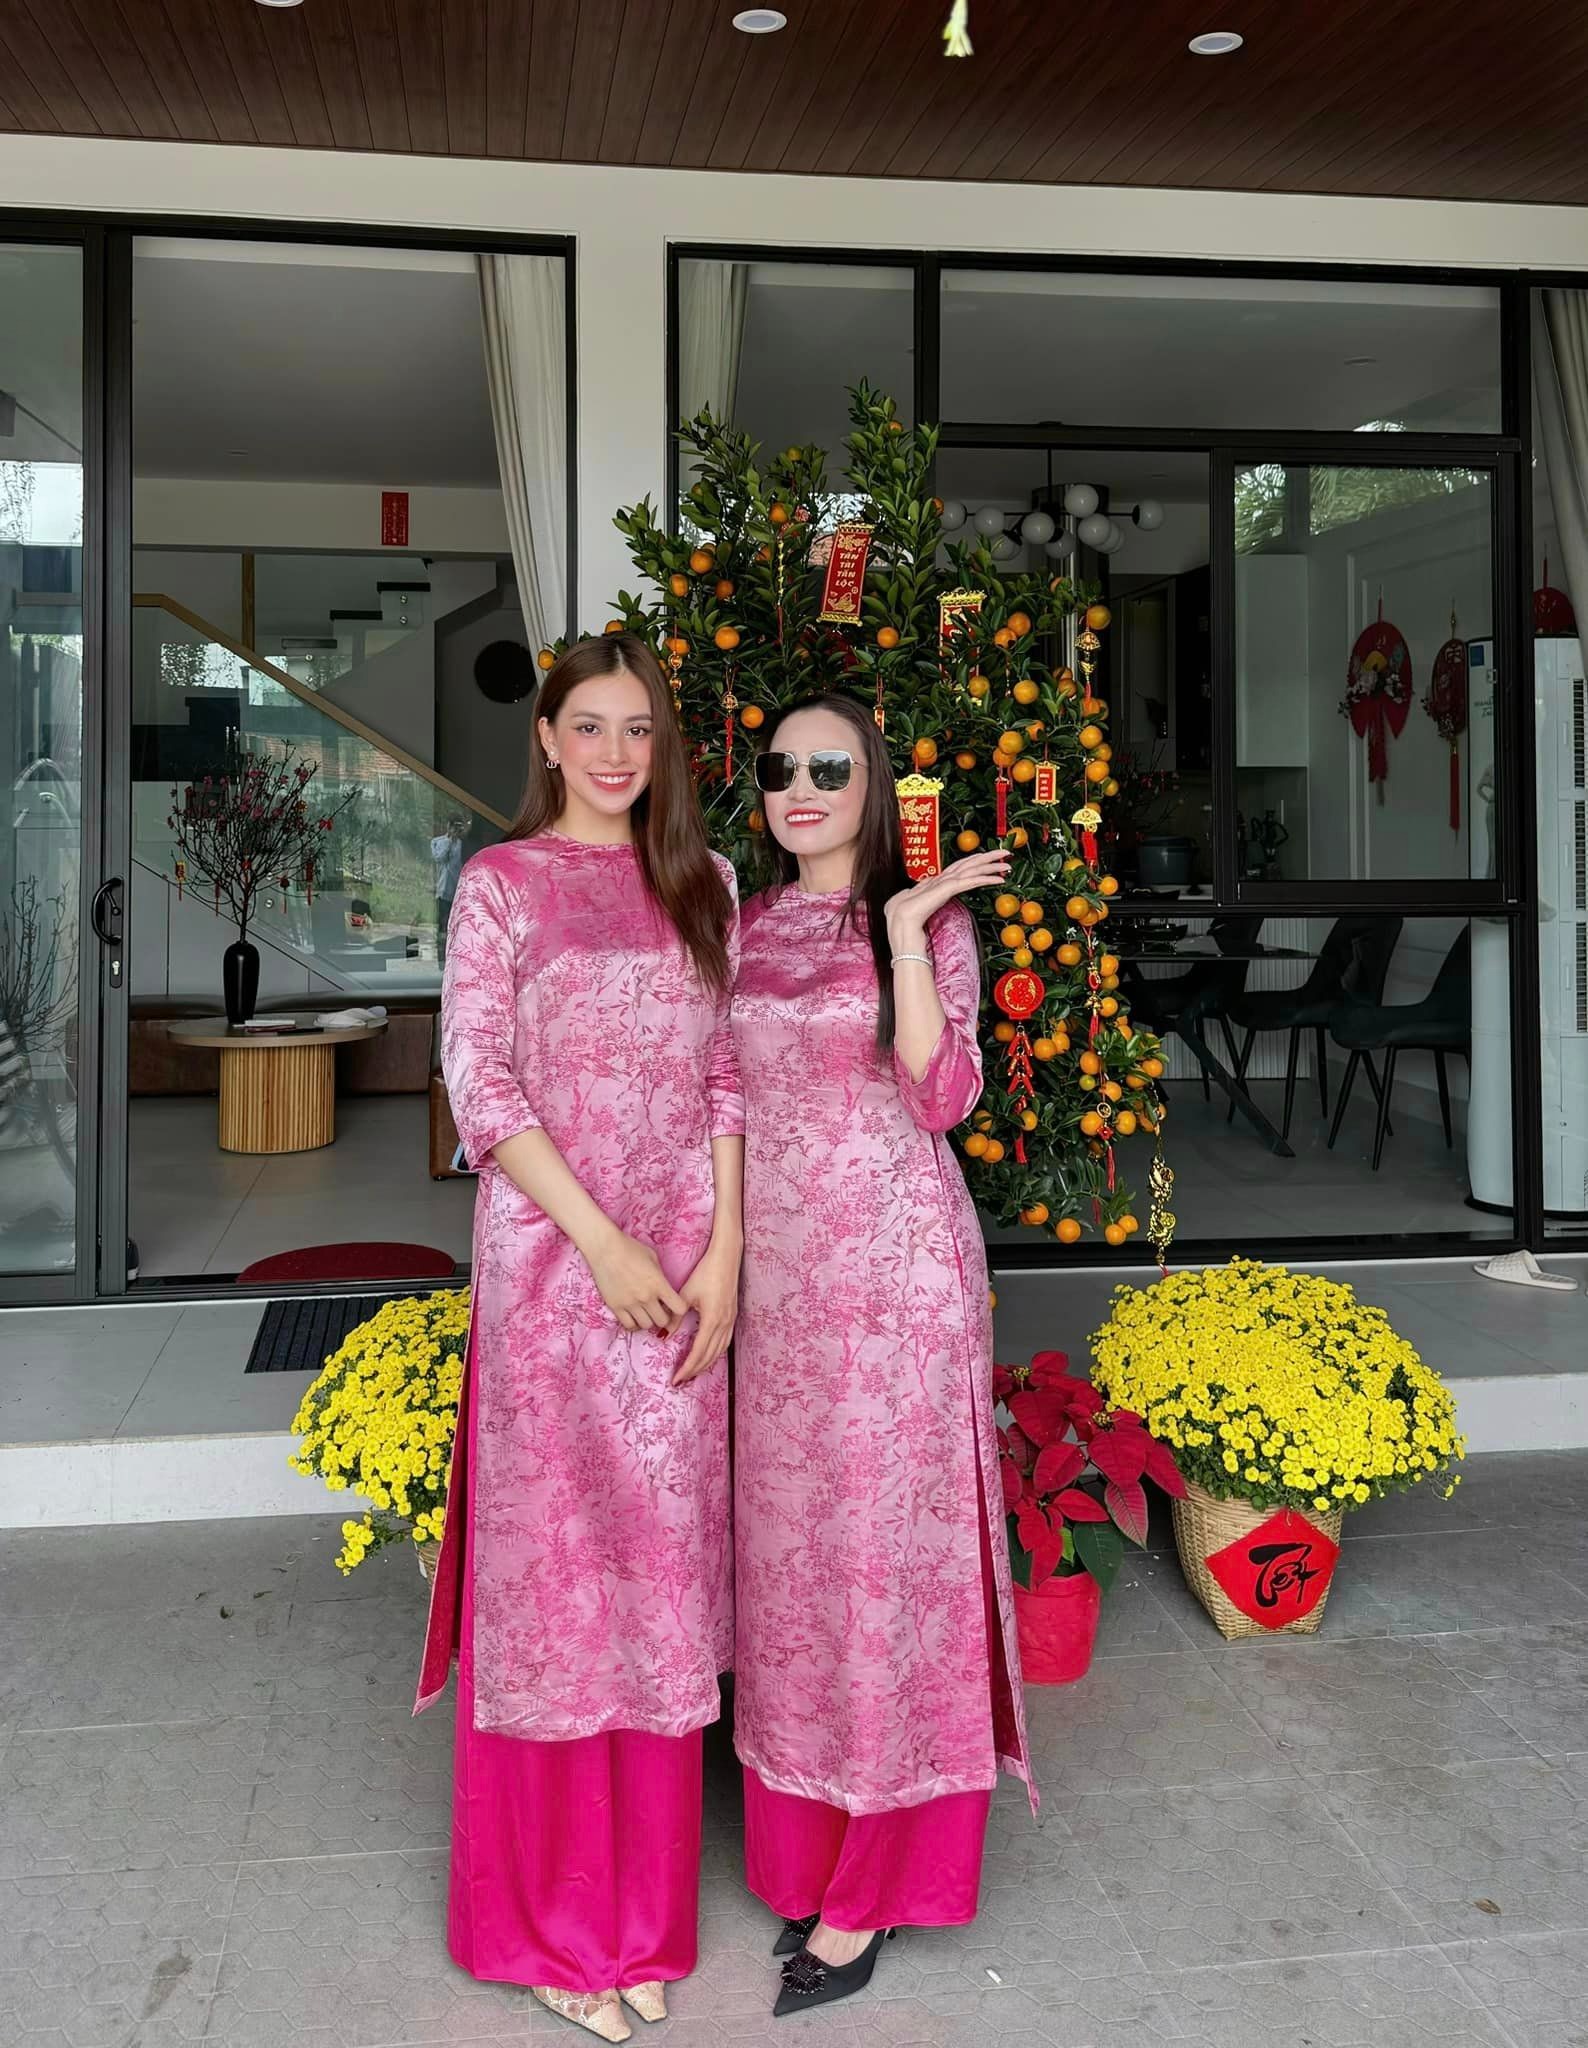 Hoa hậu Tiểu Vy và mẹ diện áo dài đôi màu hồng ngày đầu năm